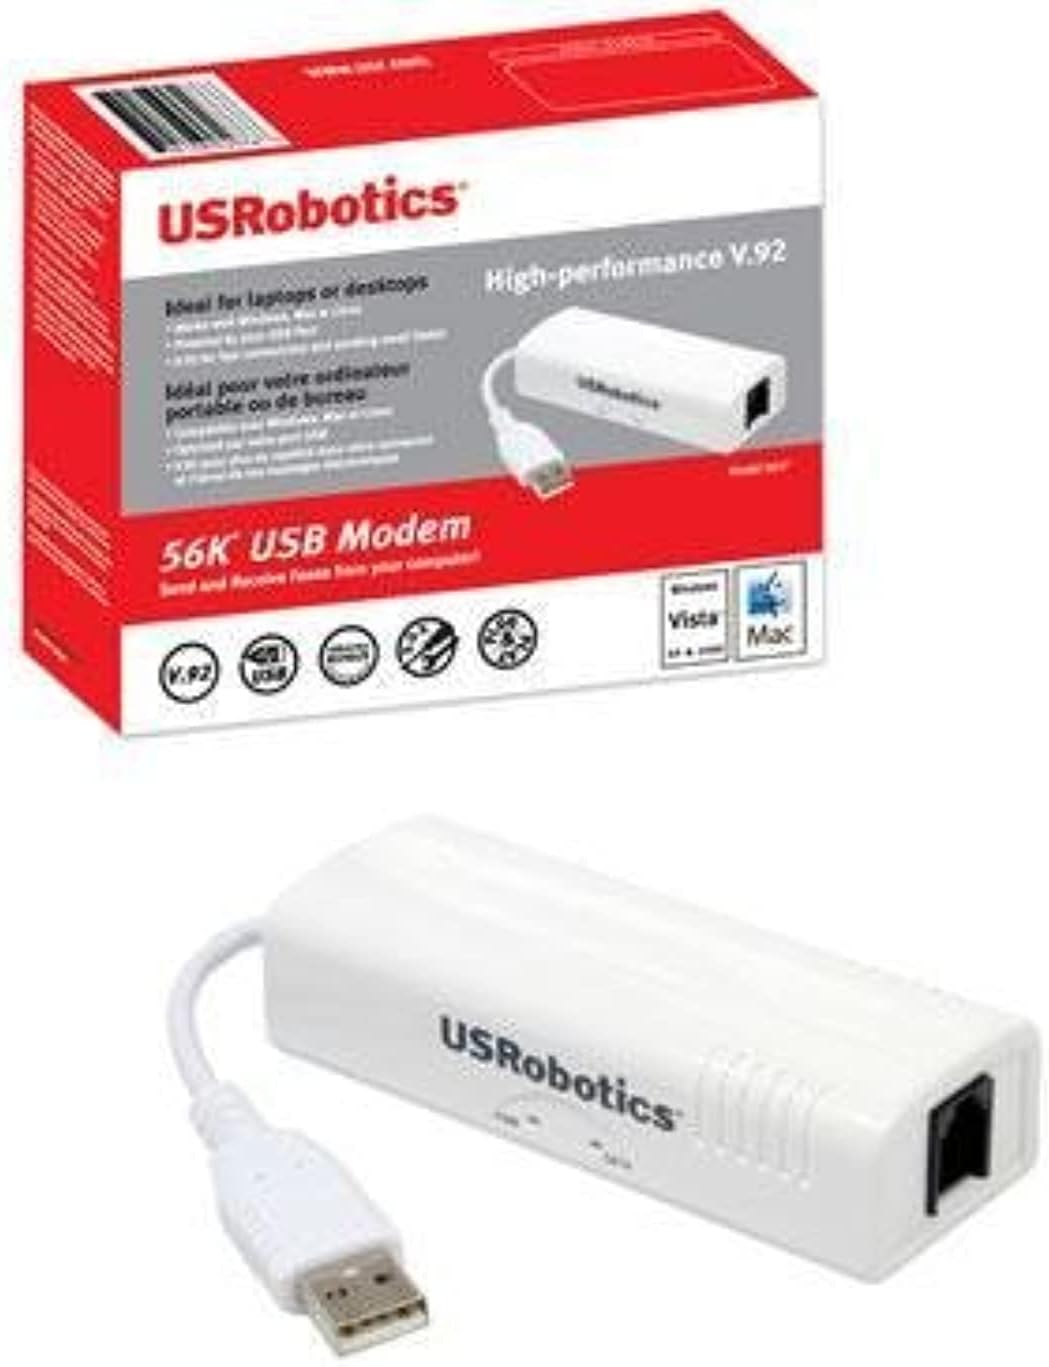 u.s. robotics usr5637 56k usb controller dial-up external fax modem with voice - image 2 of 7